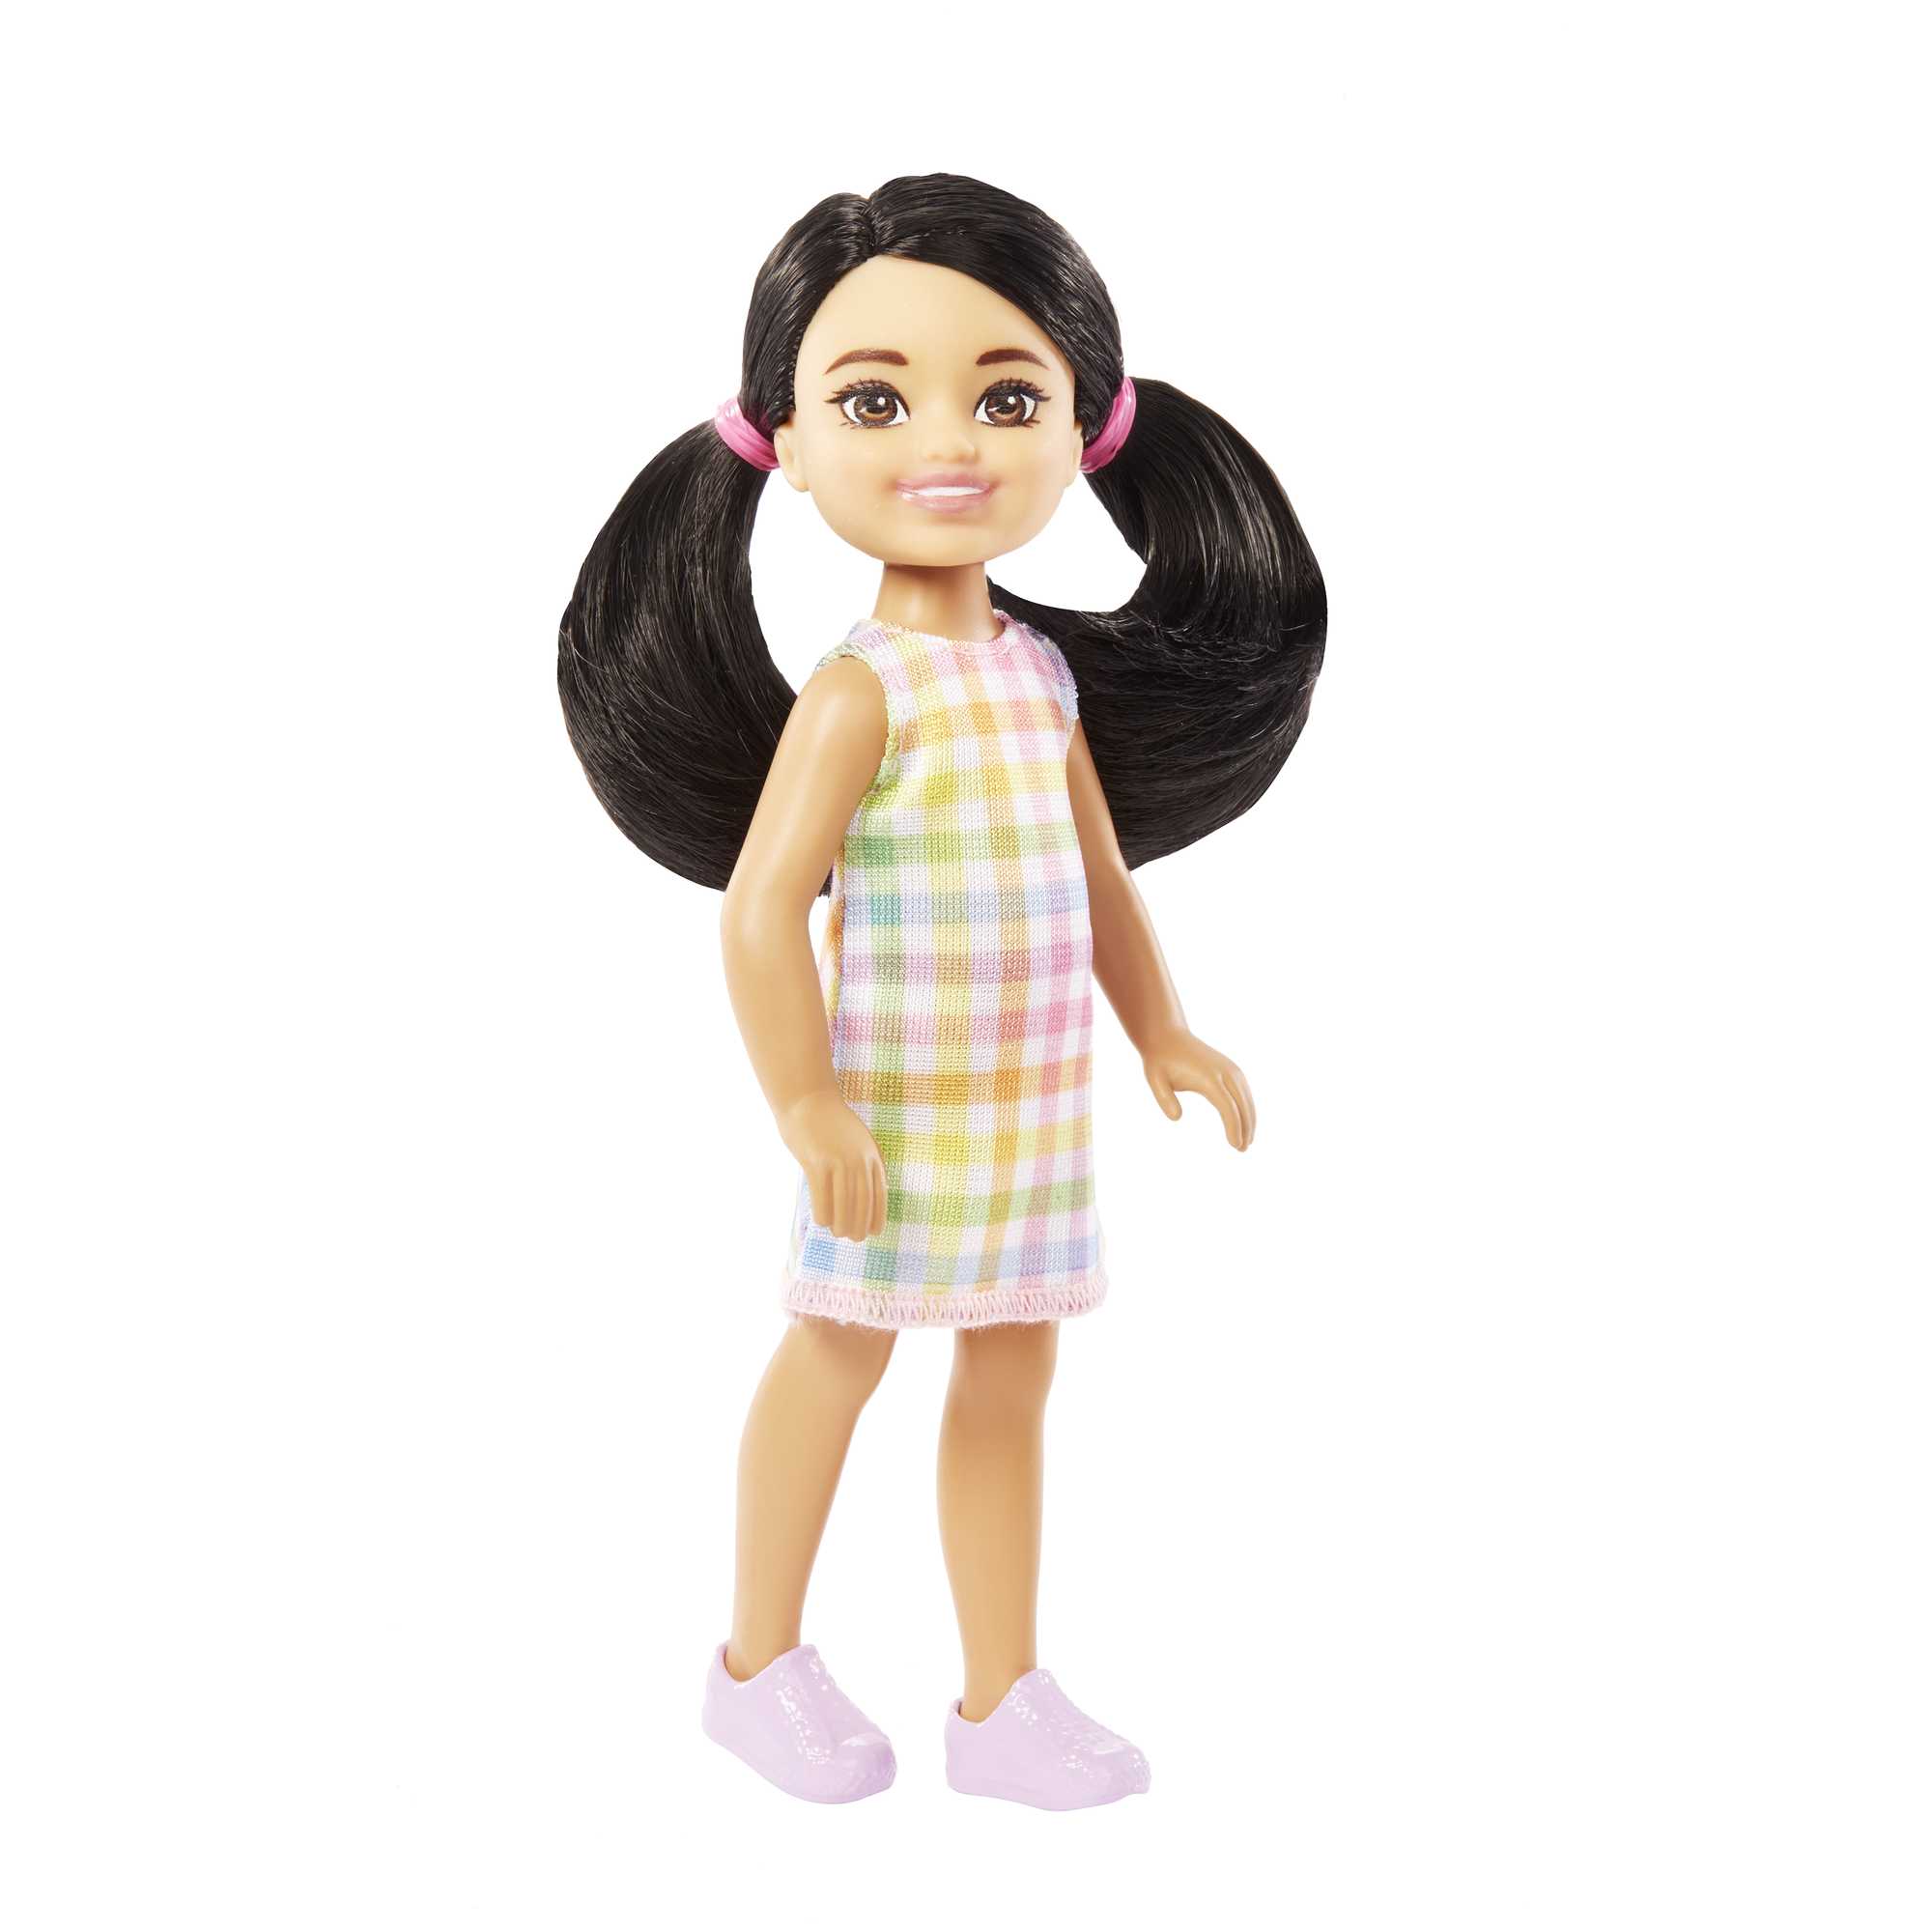 Barbie Chelsea Dolls | Small Doll in Plaid Dress | MATTEL